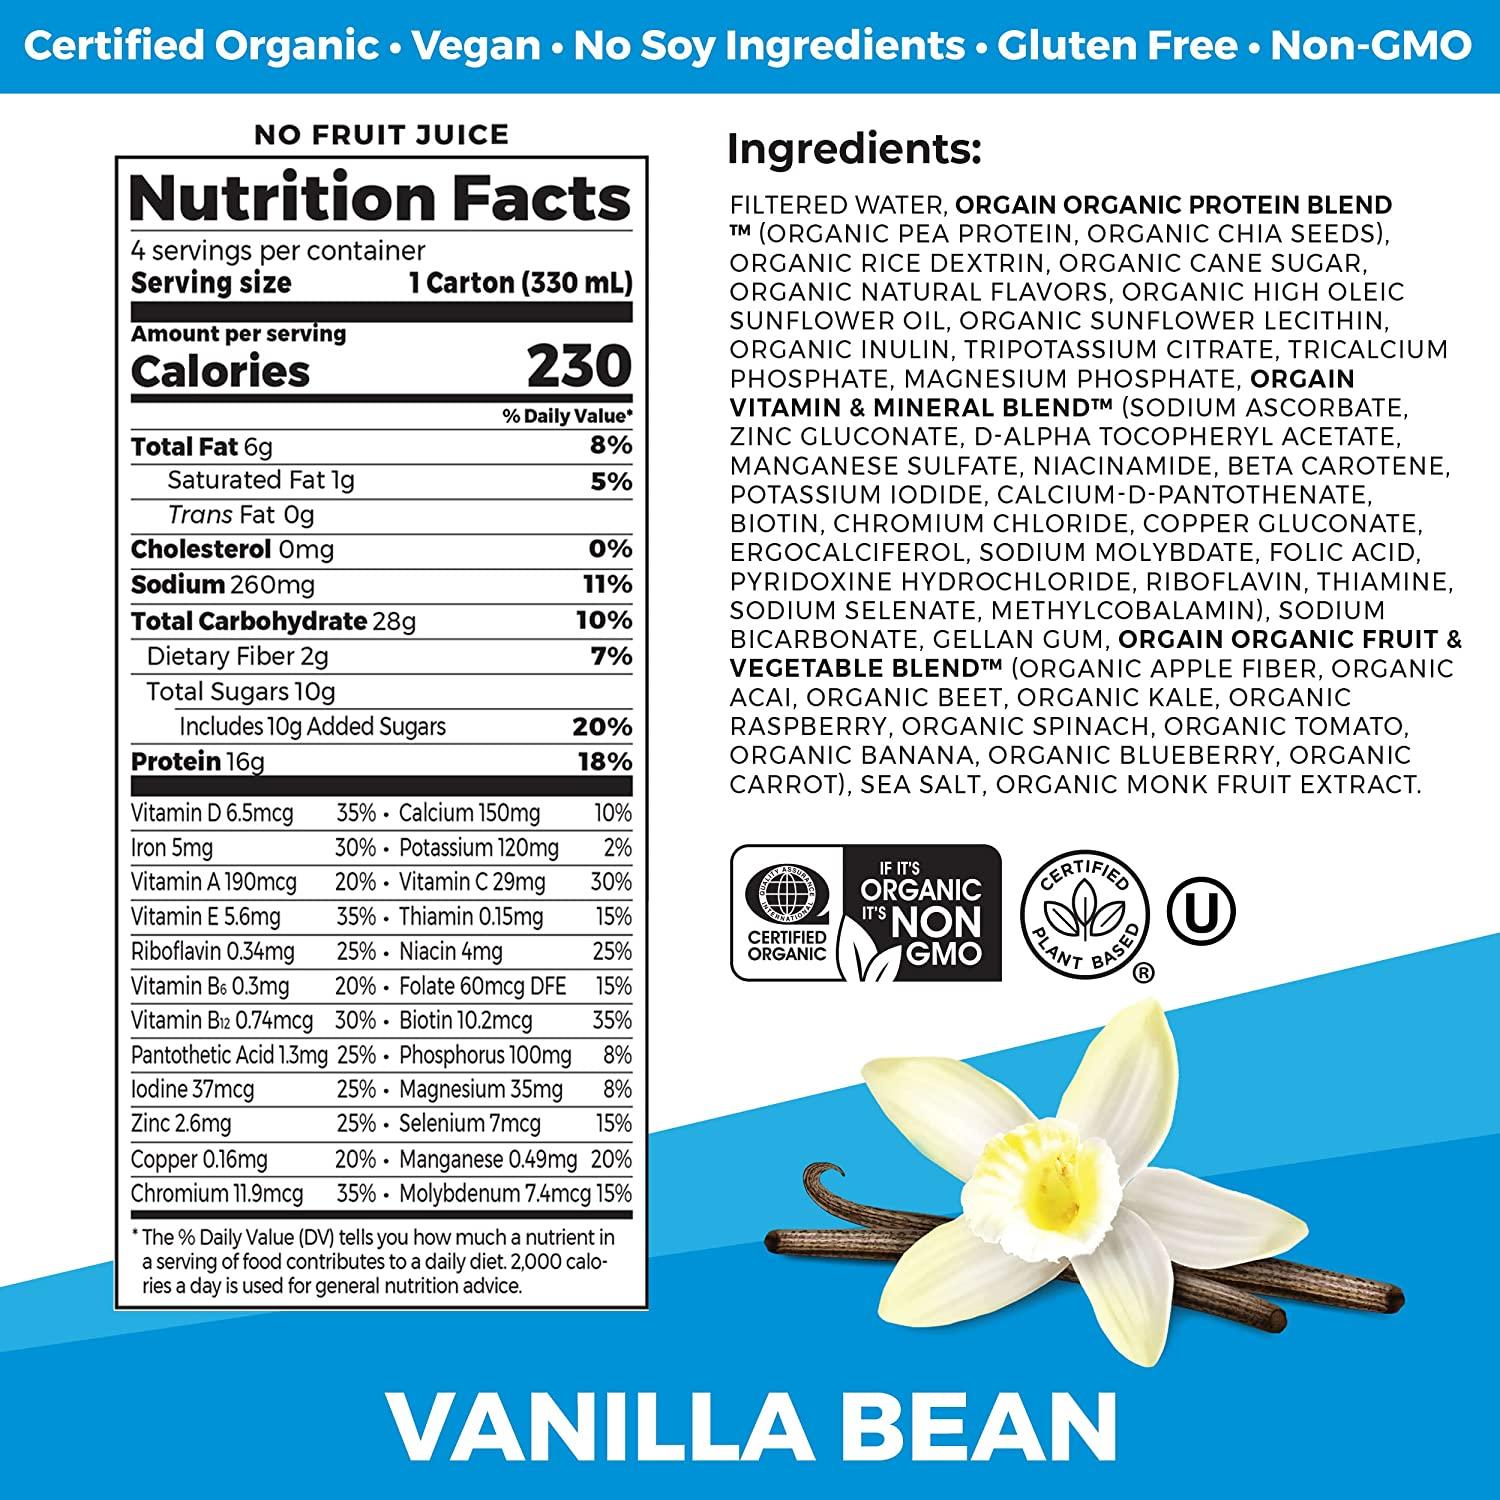 Orgain Clean Protein Gluten Free Milk Protein Shake Vanilla Bean - 11 Fl  Oz, 18 Pack 